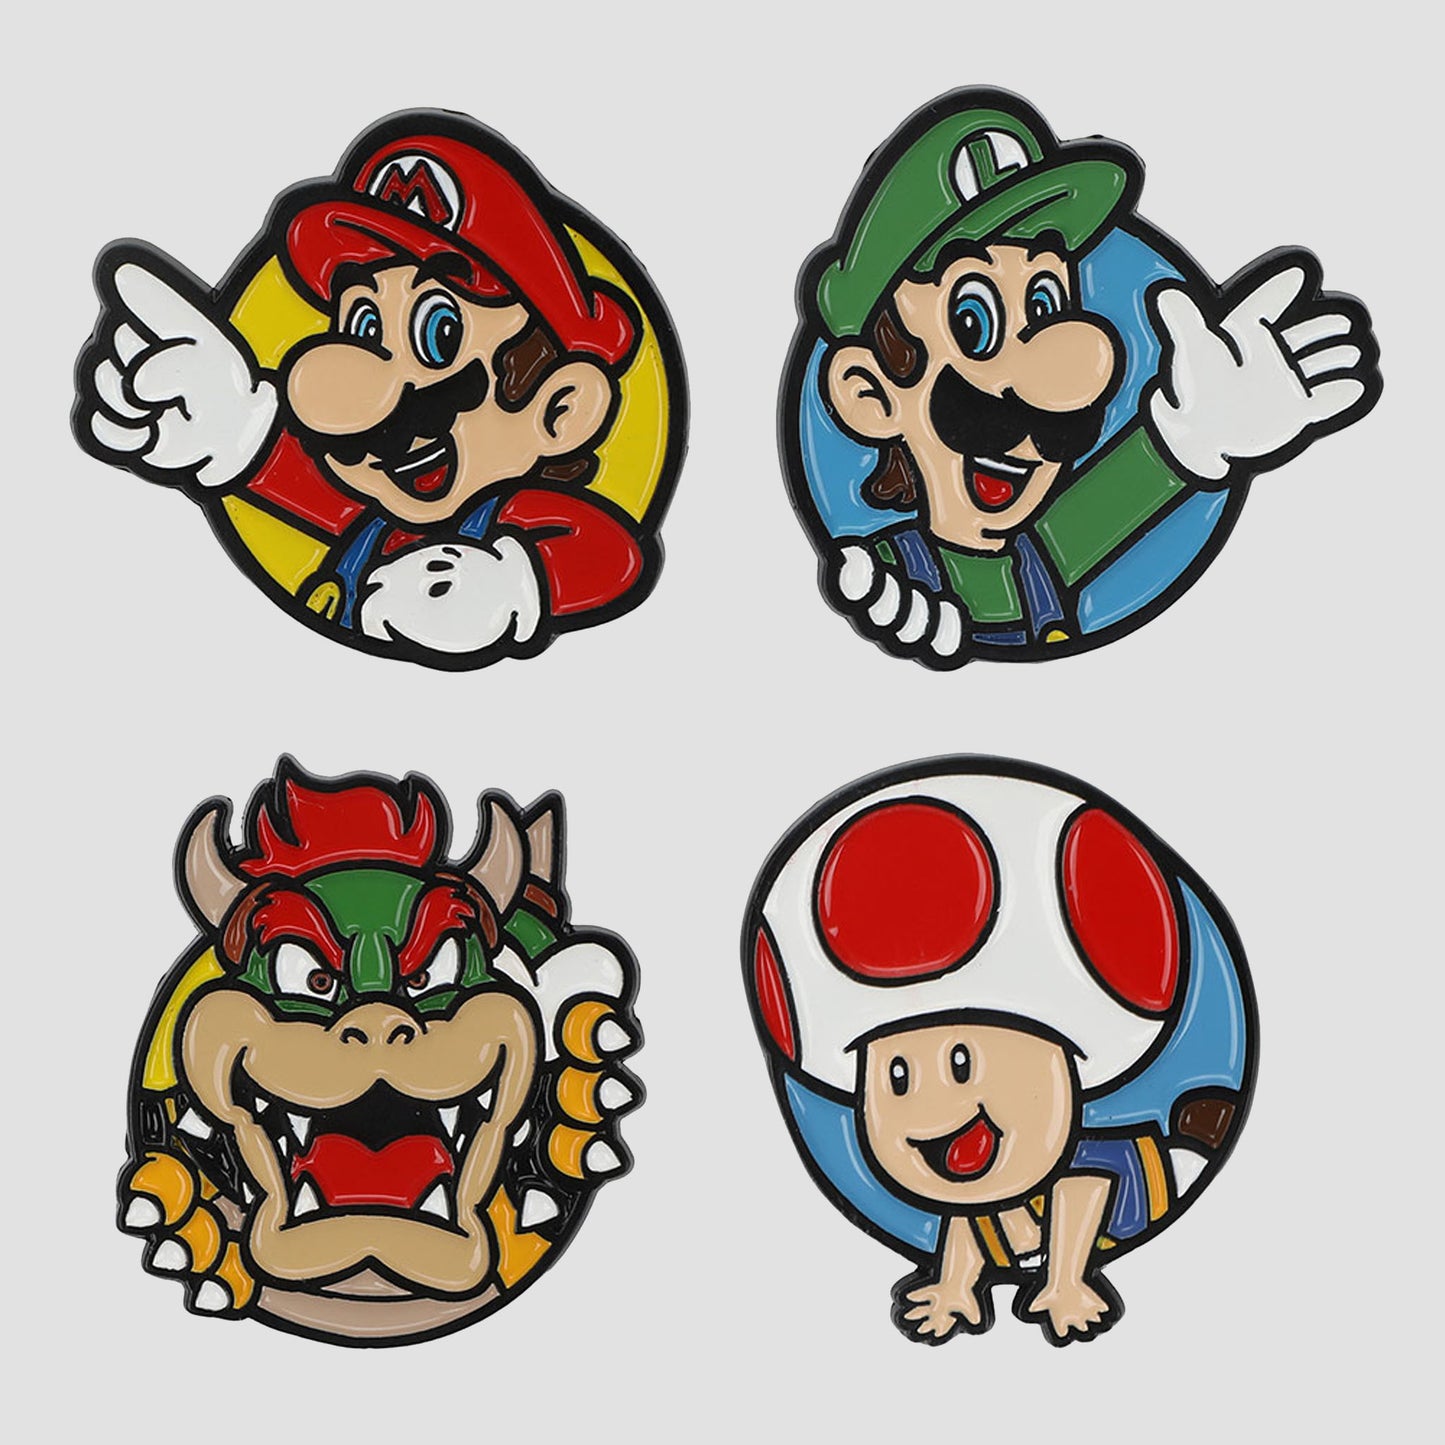 Load image into Gallery viewer, Super Mario Bros. Enamel Pin Set
